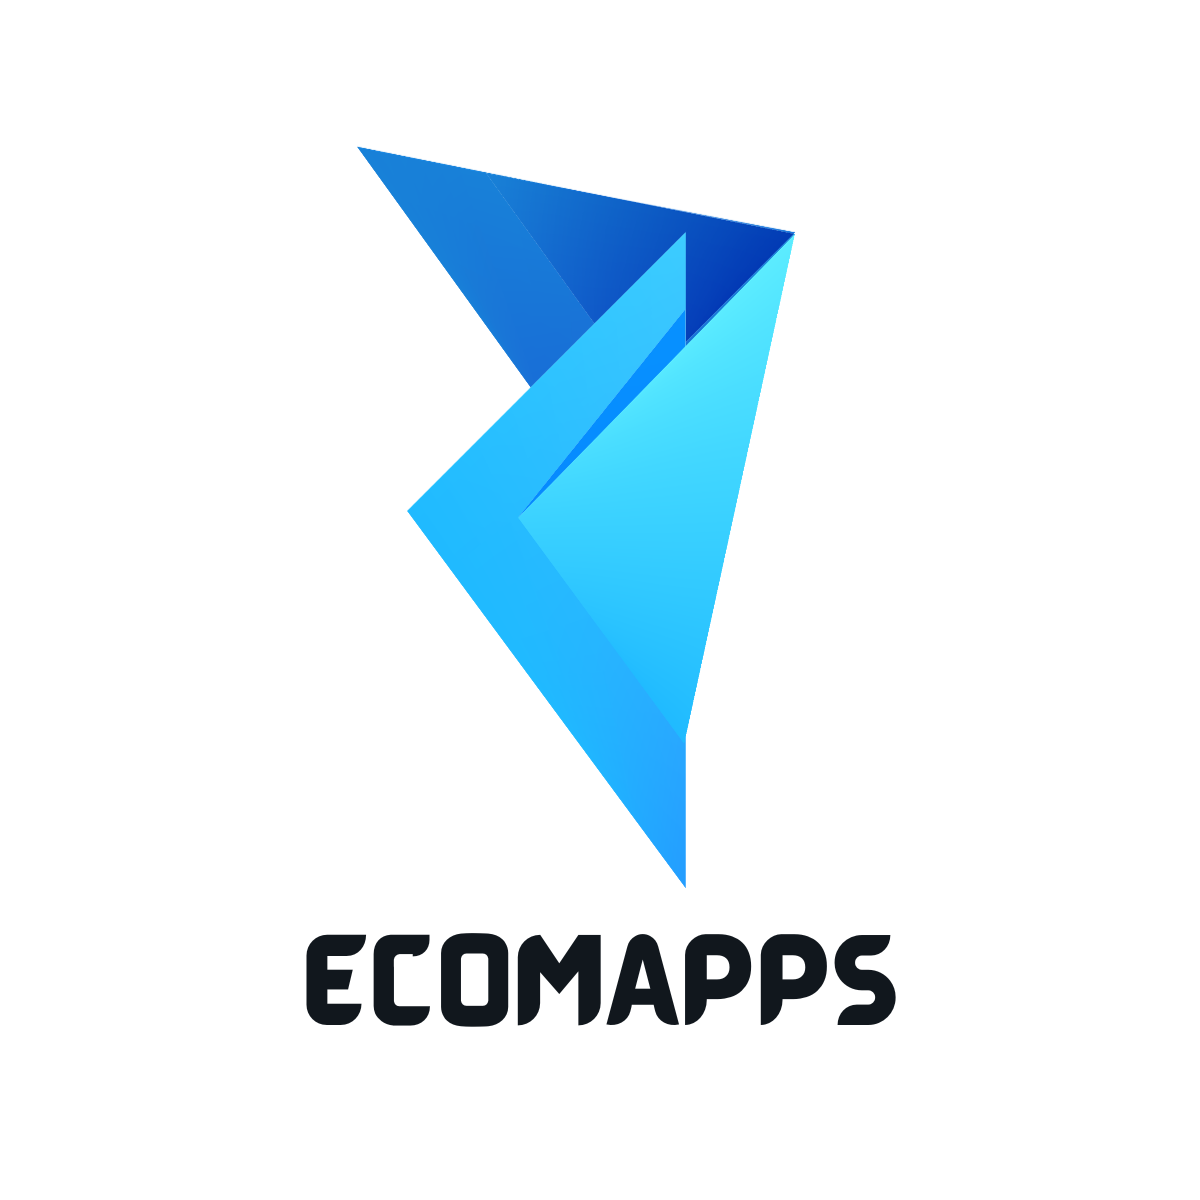 EcomApps